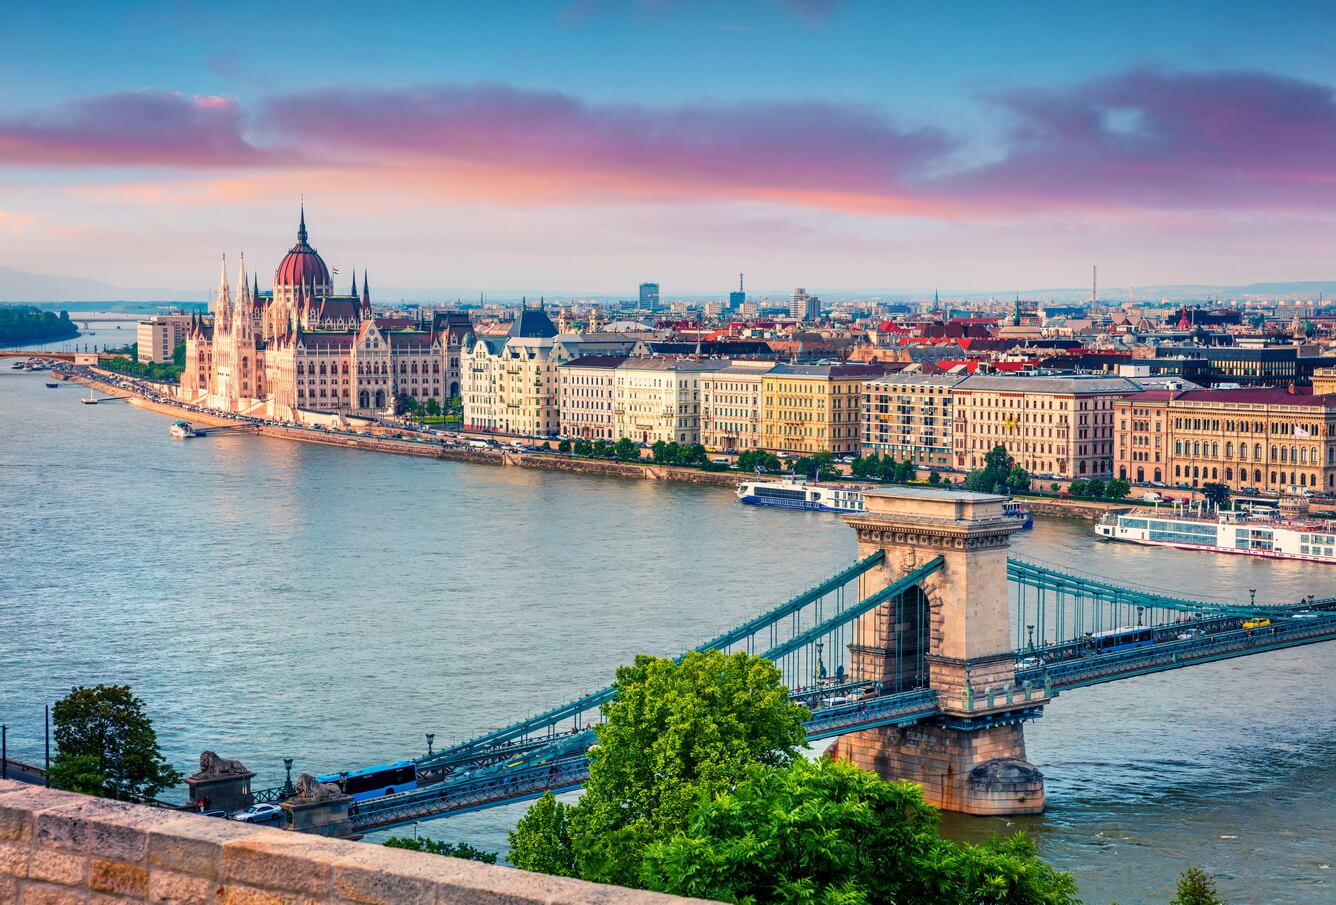 Budapest (Hungary) - “viên ngọc xanh của dòng Danube”